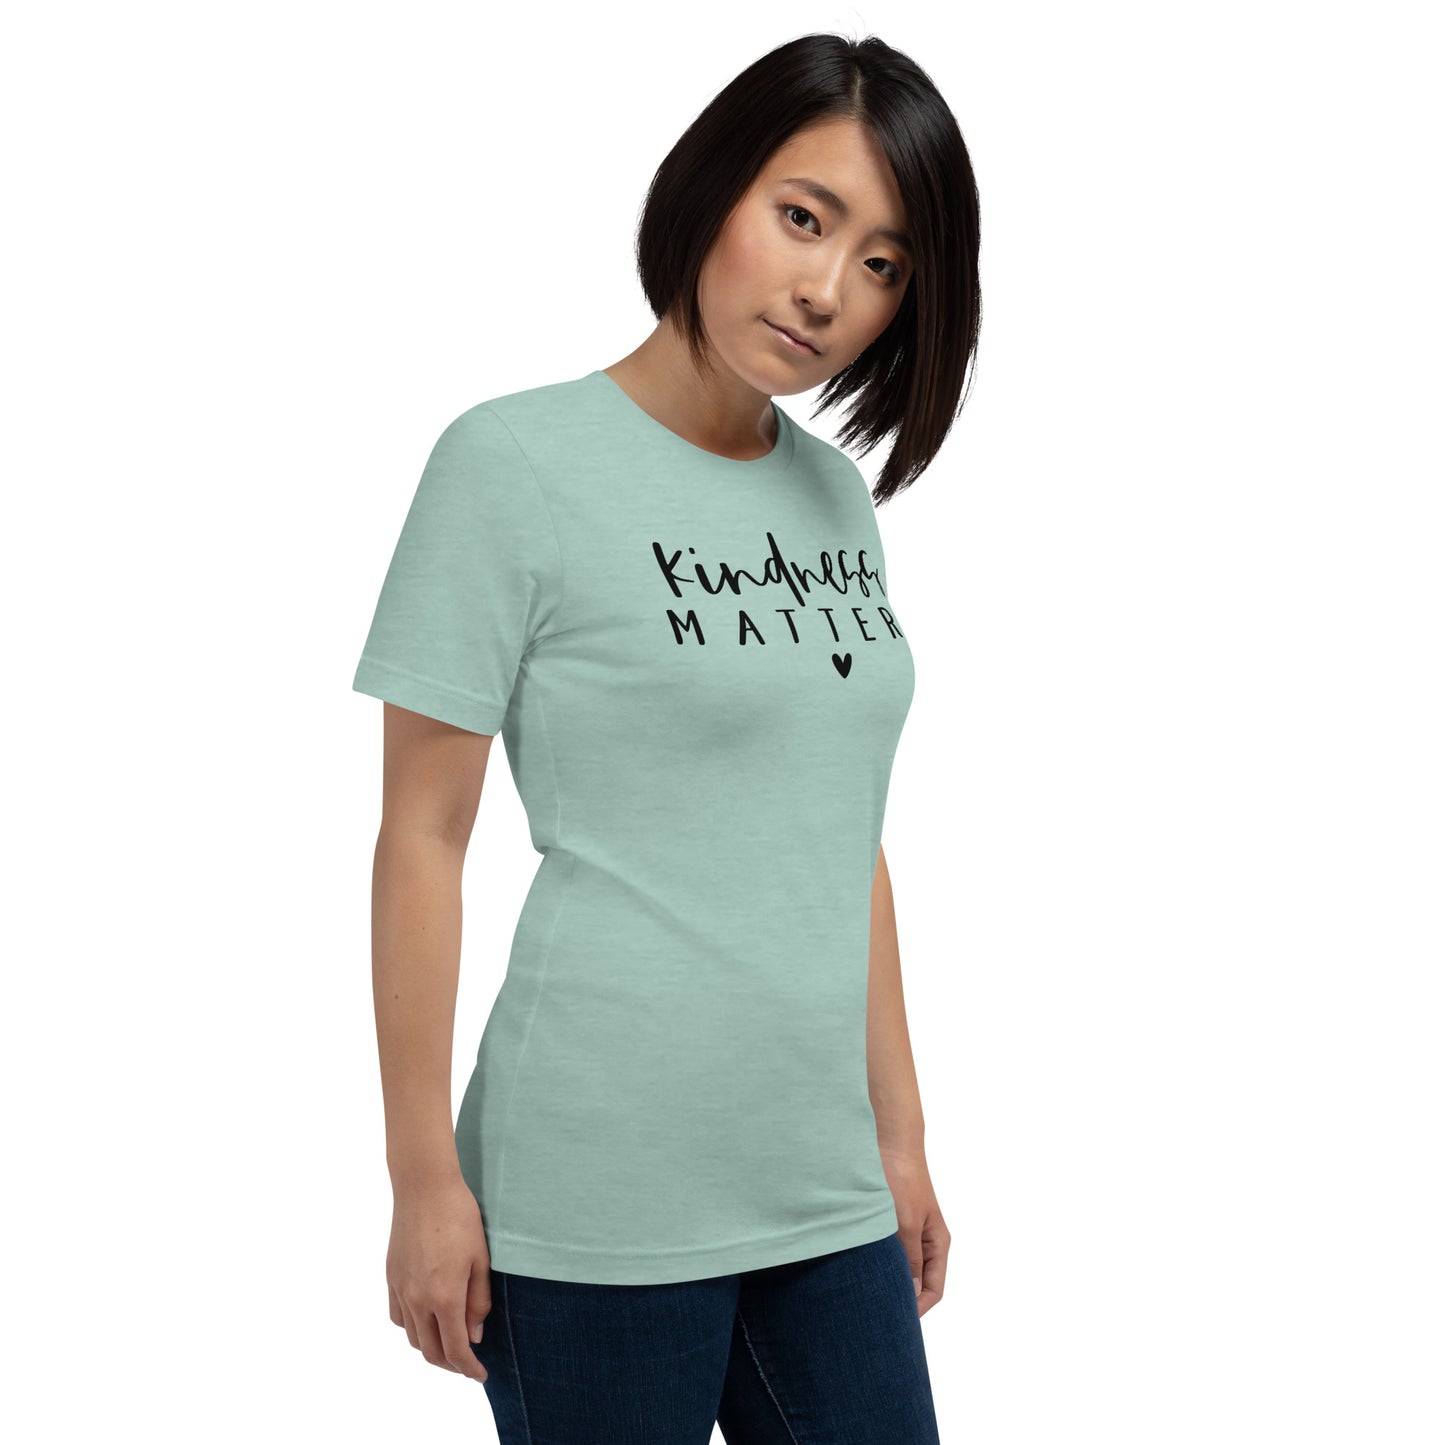 "Kindness Matter" T-shirt